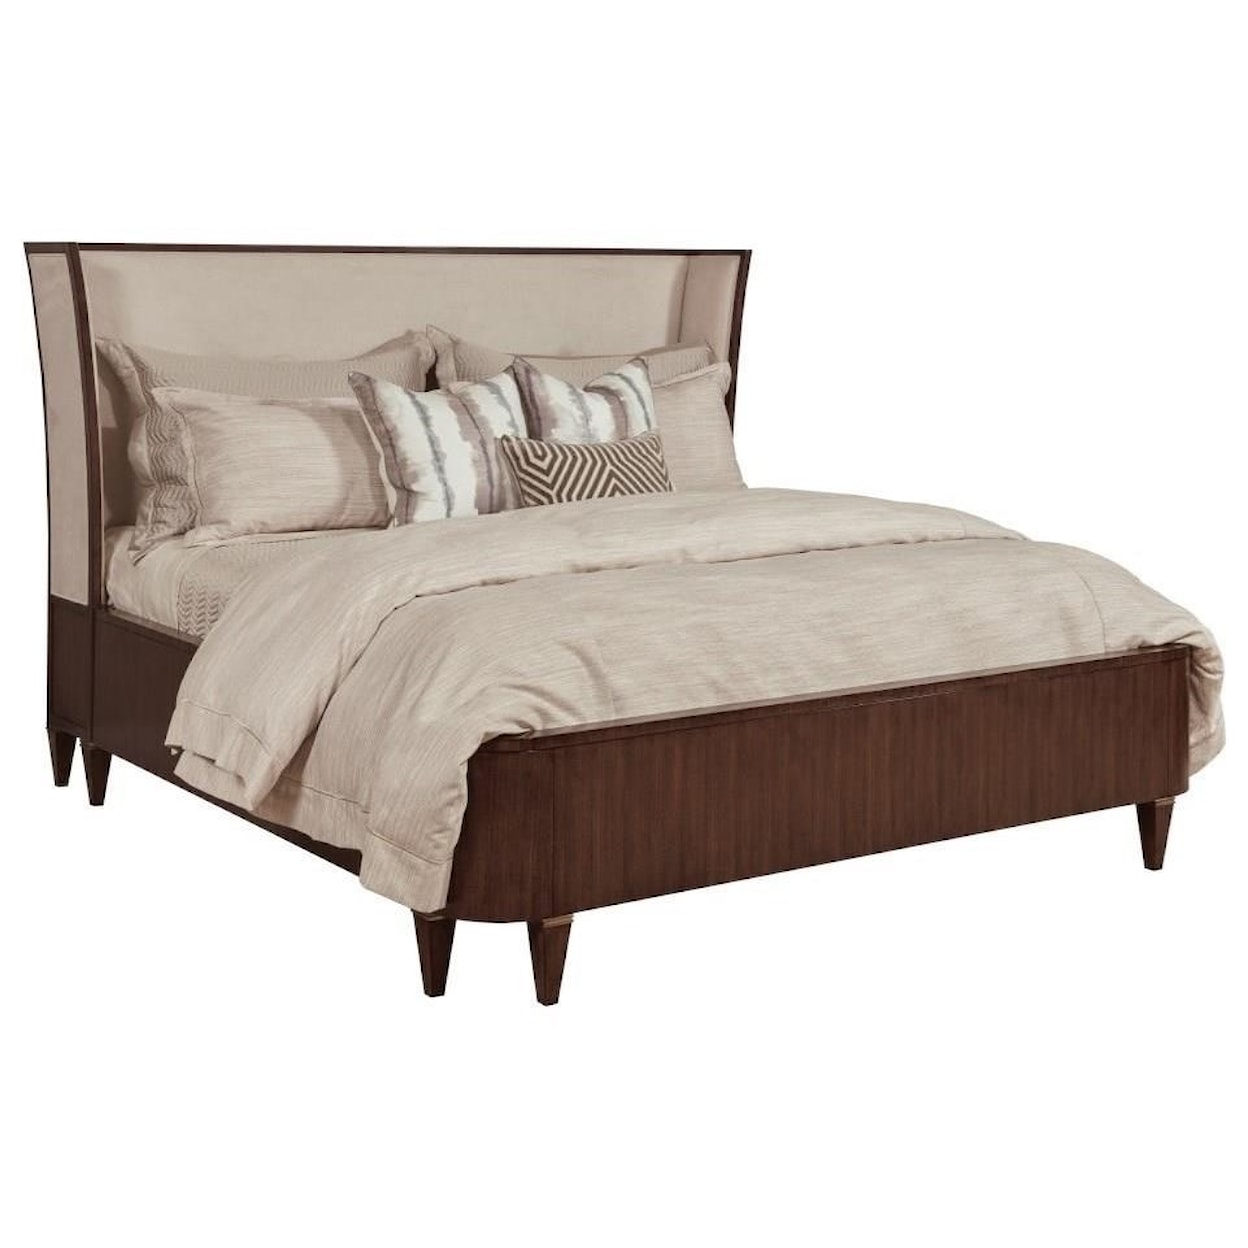 American Drew Vantage Upholstered Queen Bed